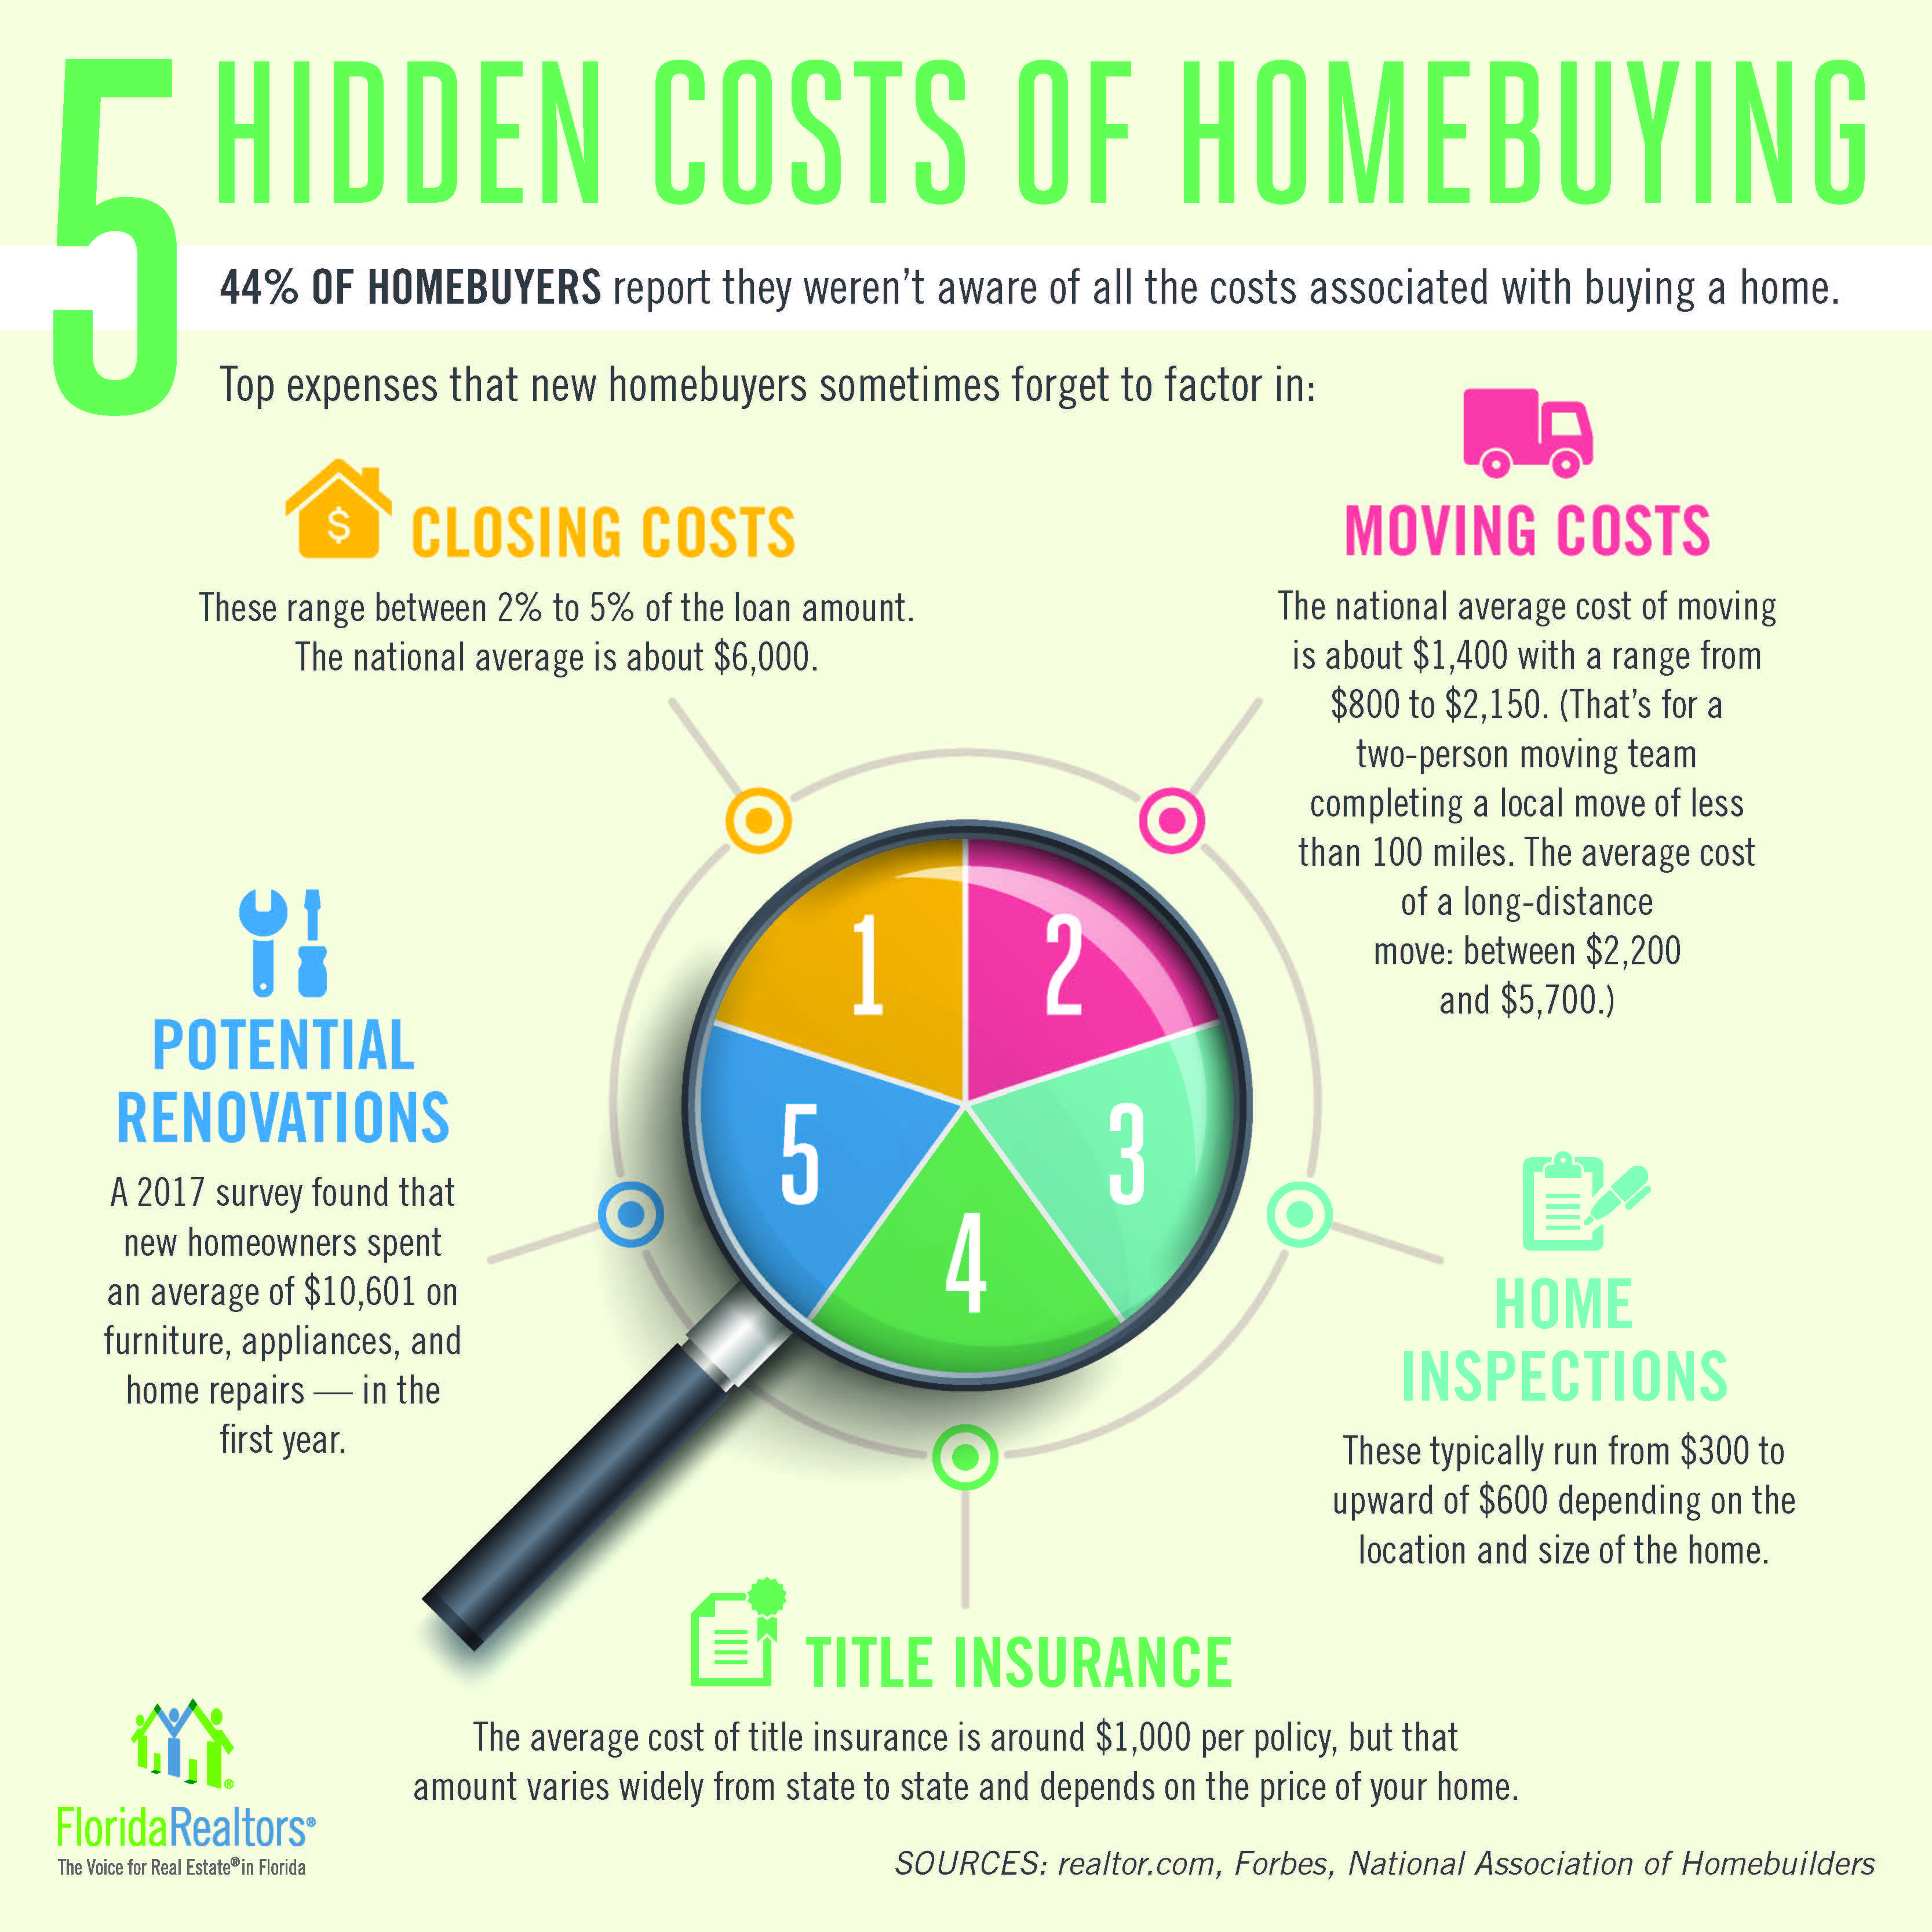 5 hidden costs of homebuying